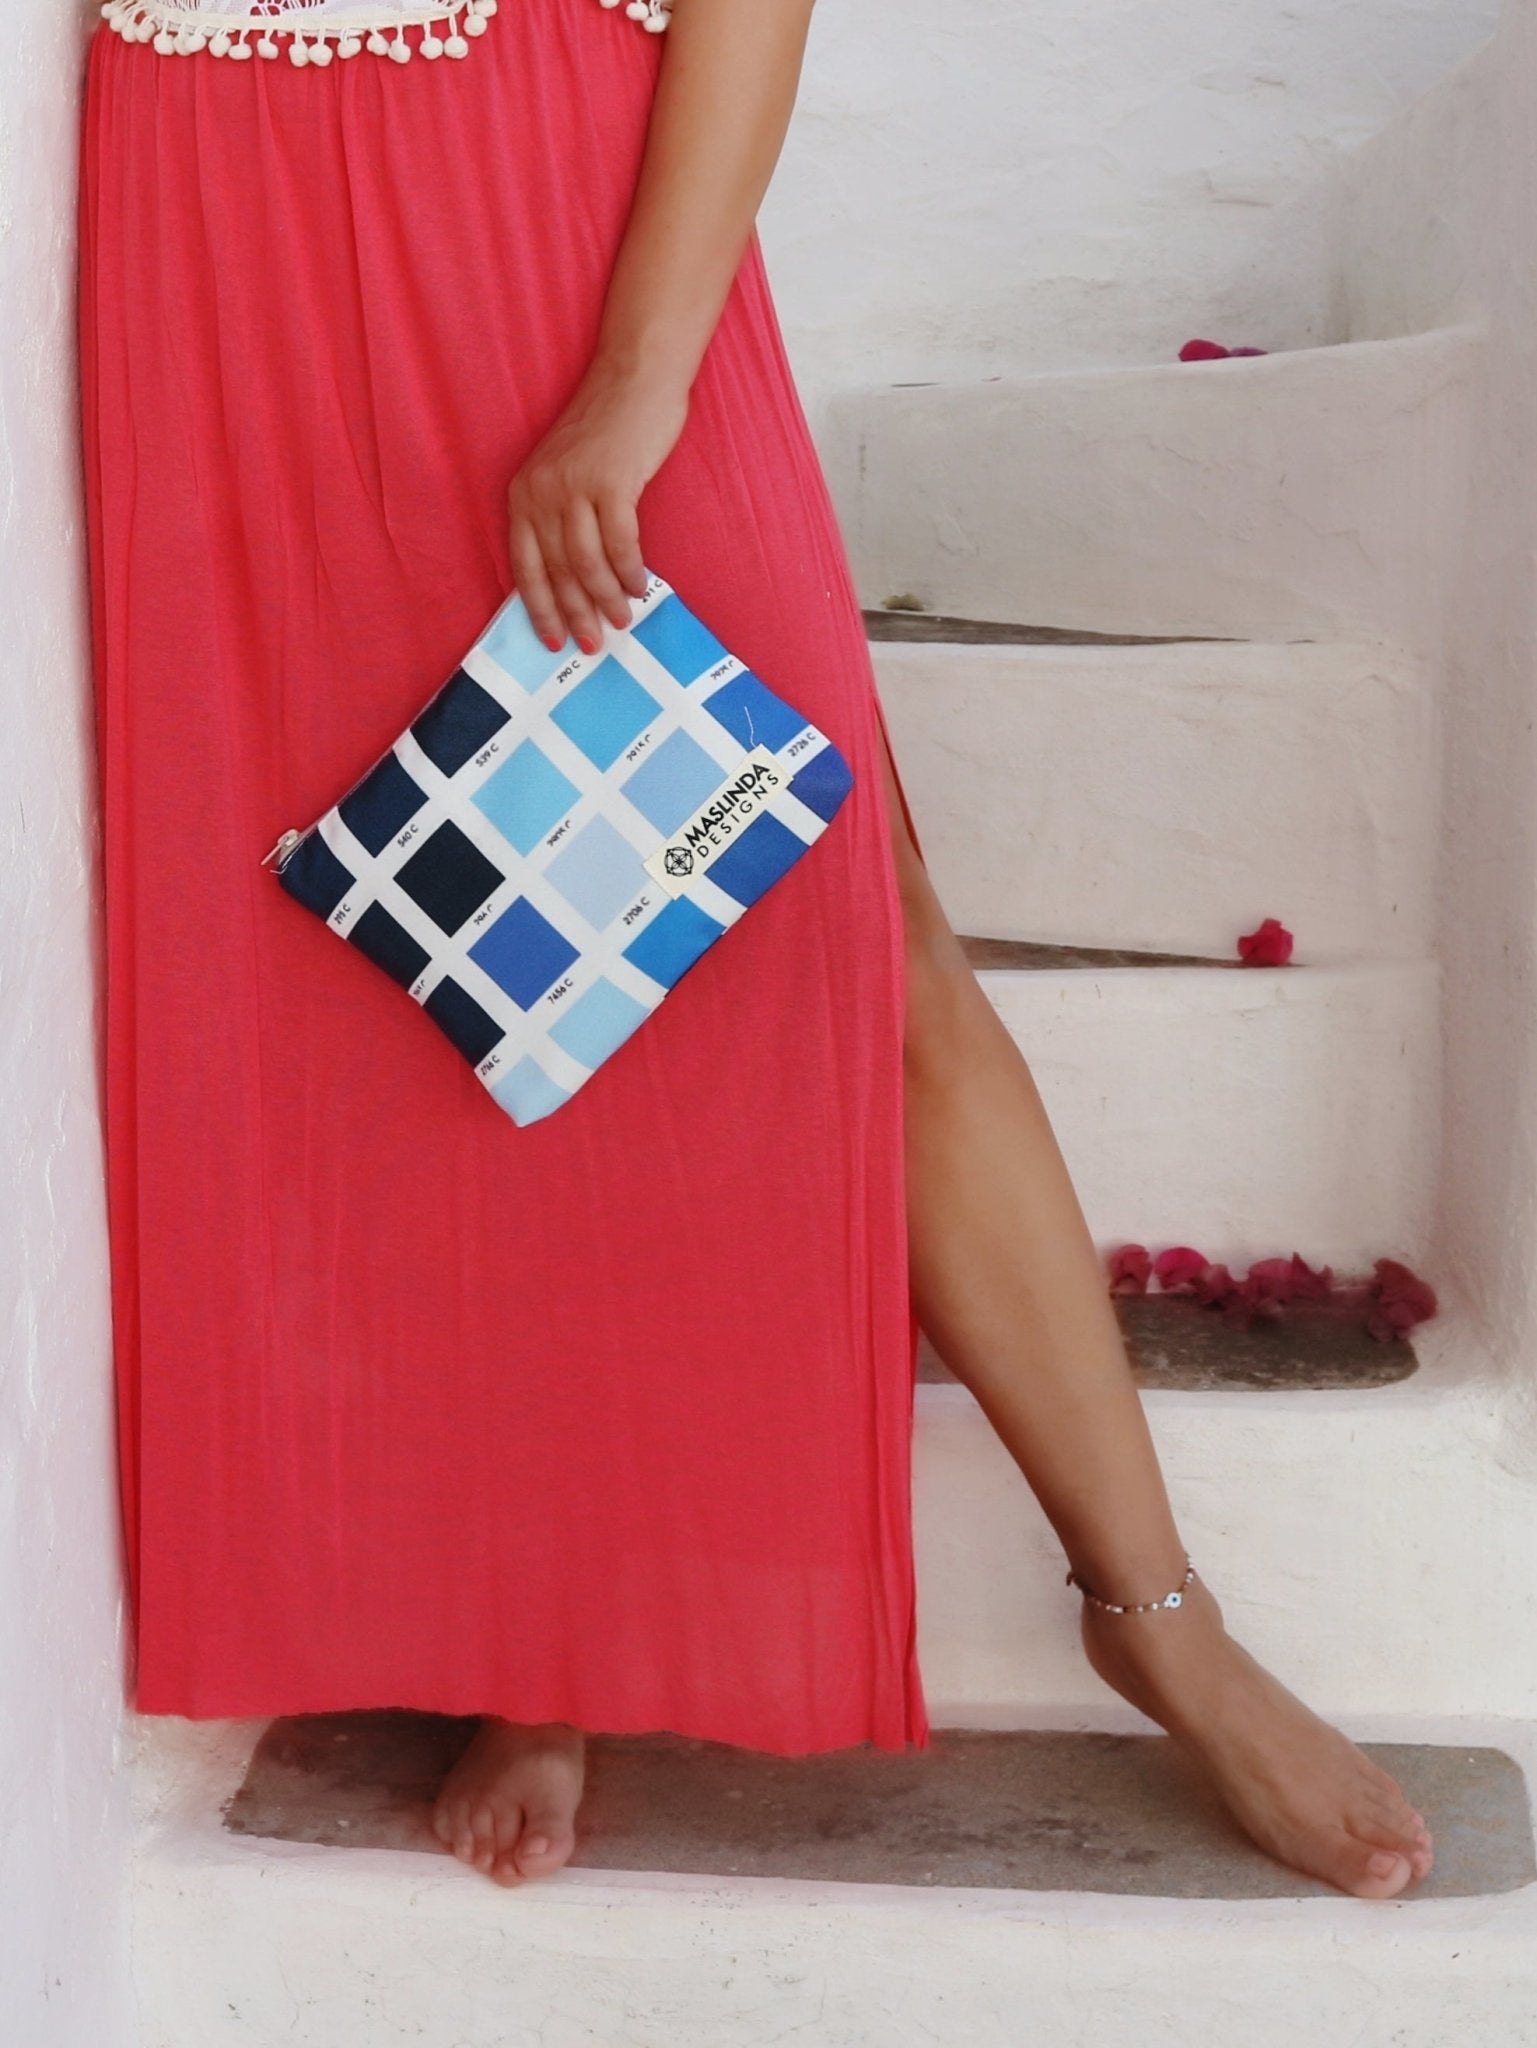 Make-up bag - Blue Squares - Maslinda Designs